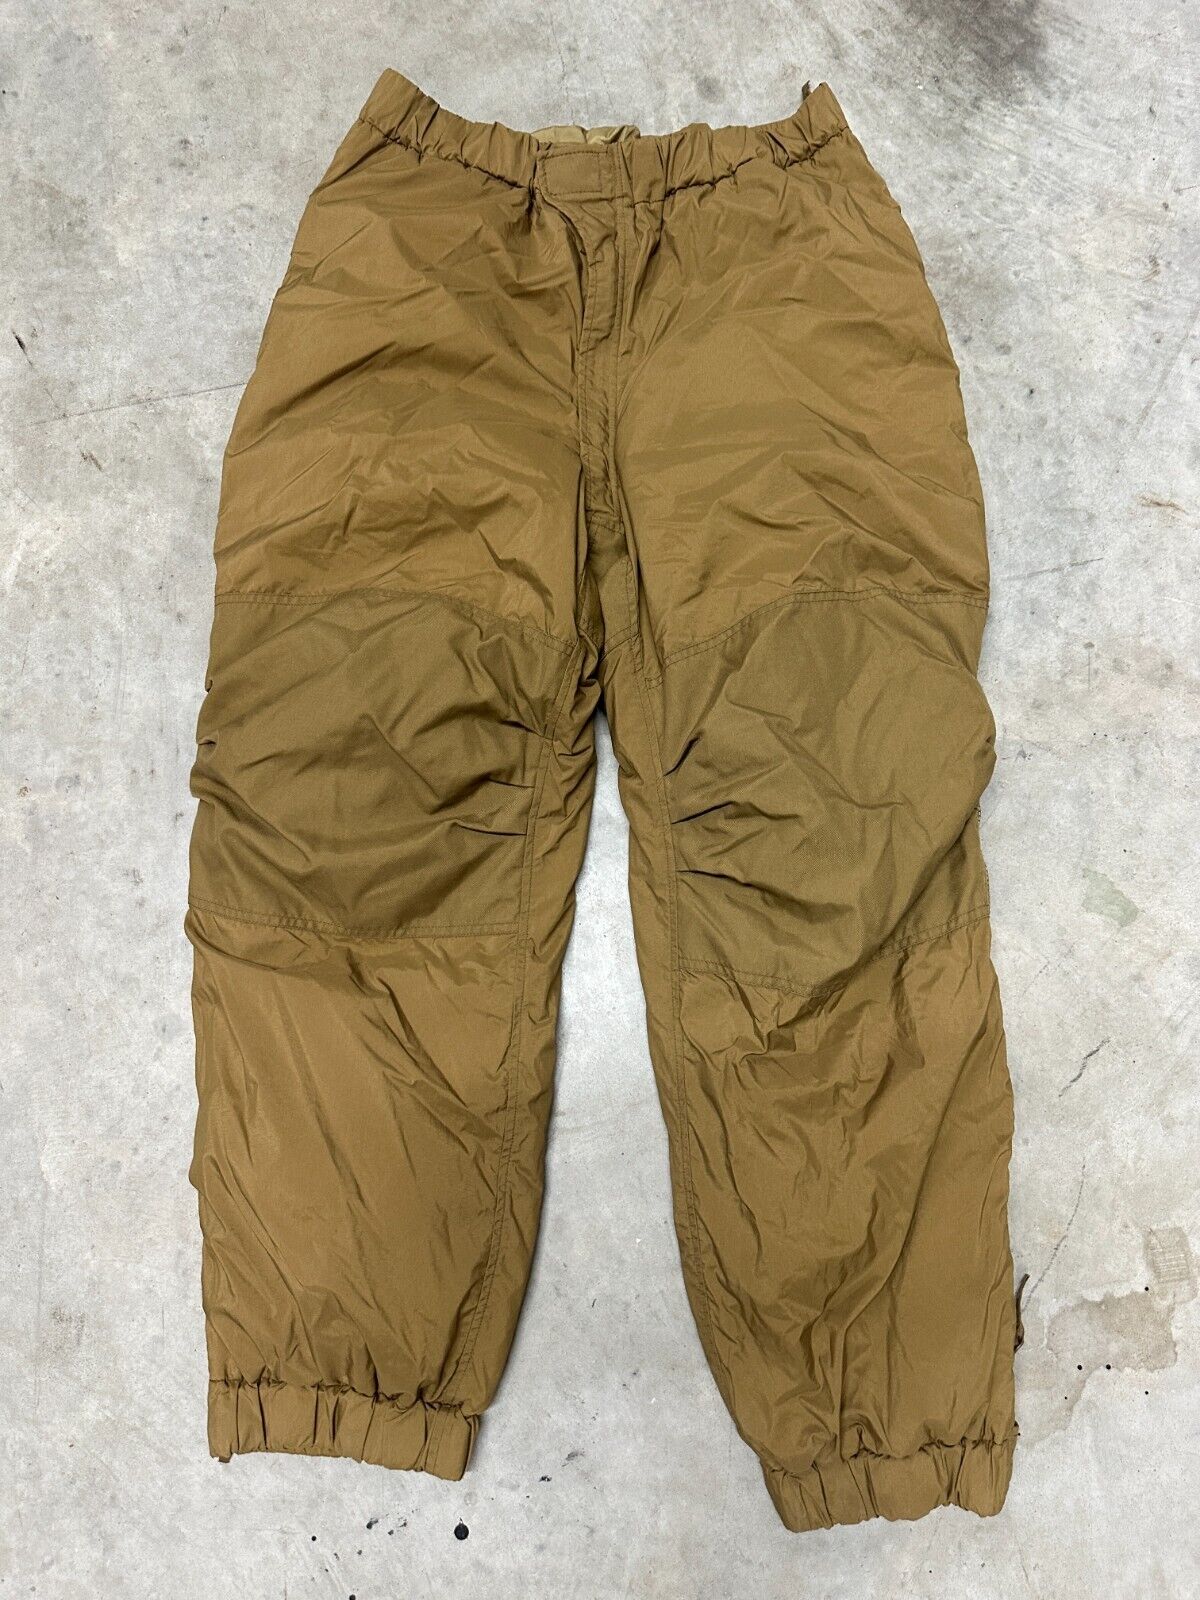 Small Reg - USMC Extreme Cold Weather Trousers Happy Suit Primaloft Pants Snow